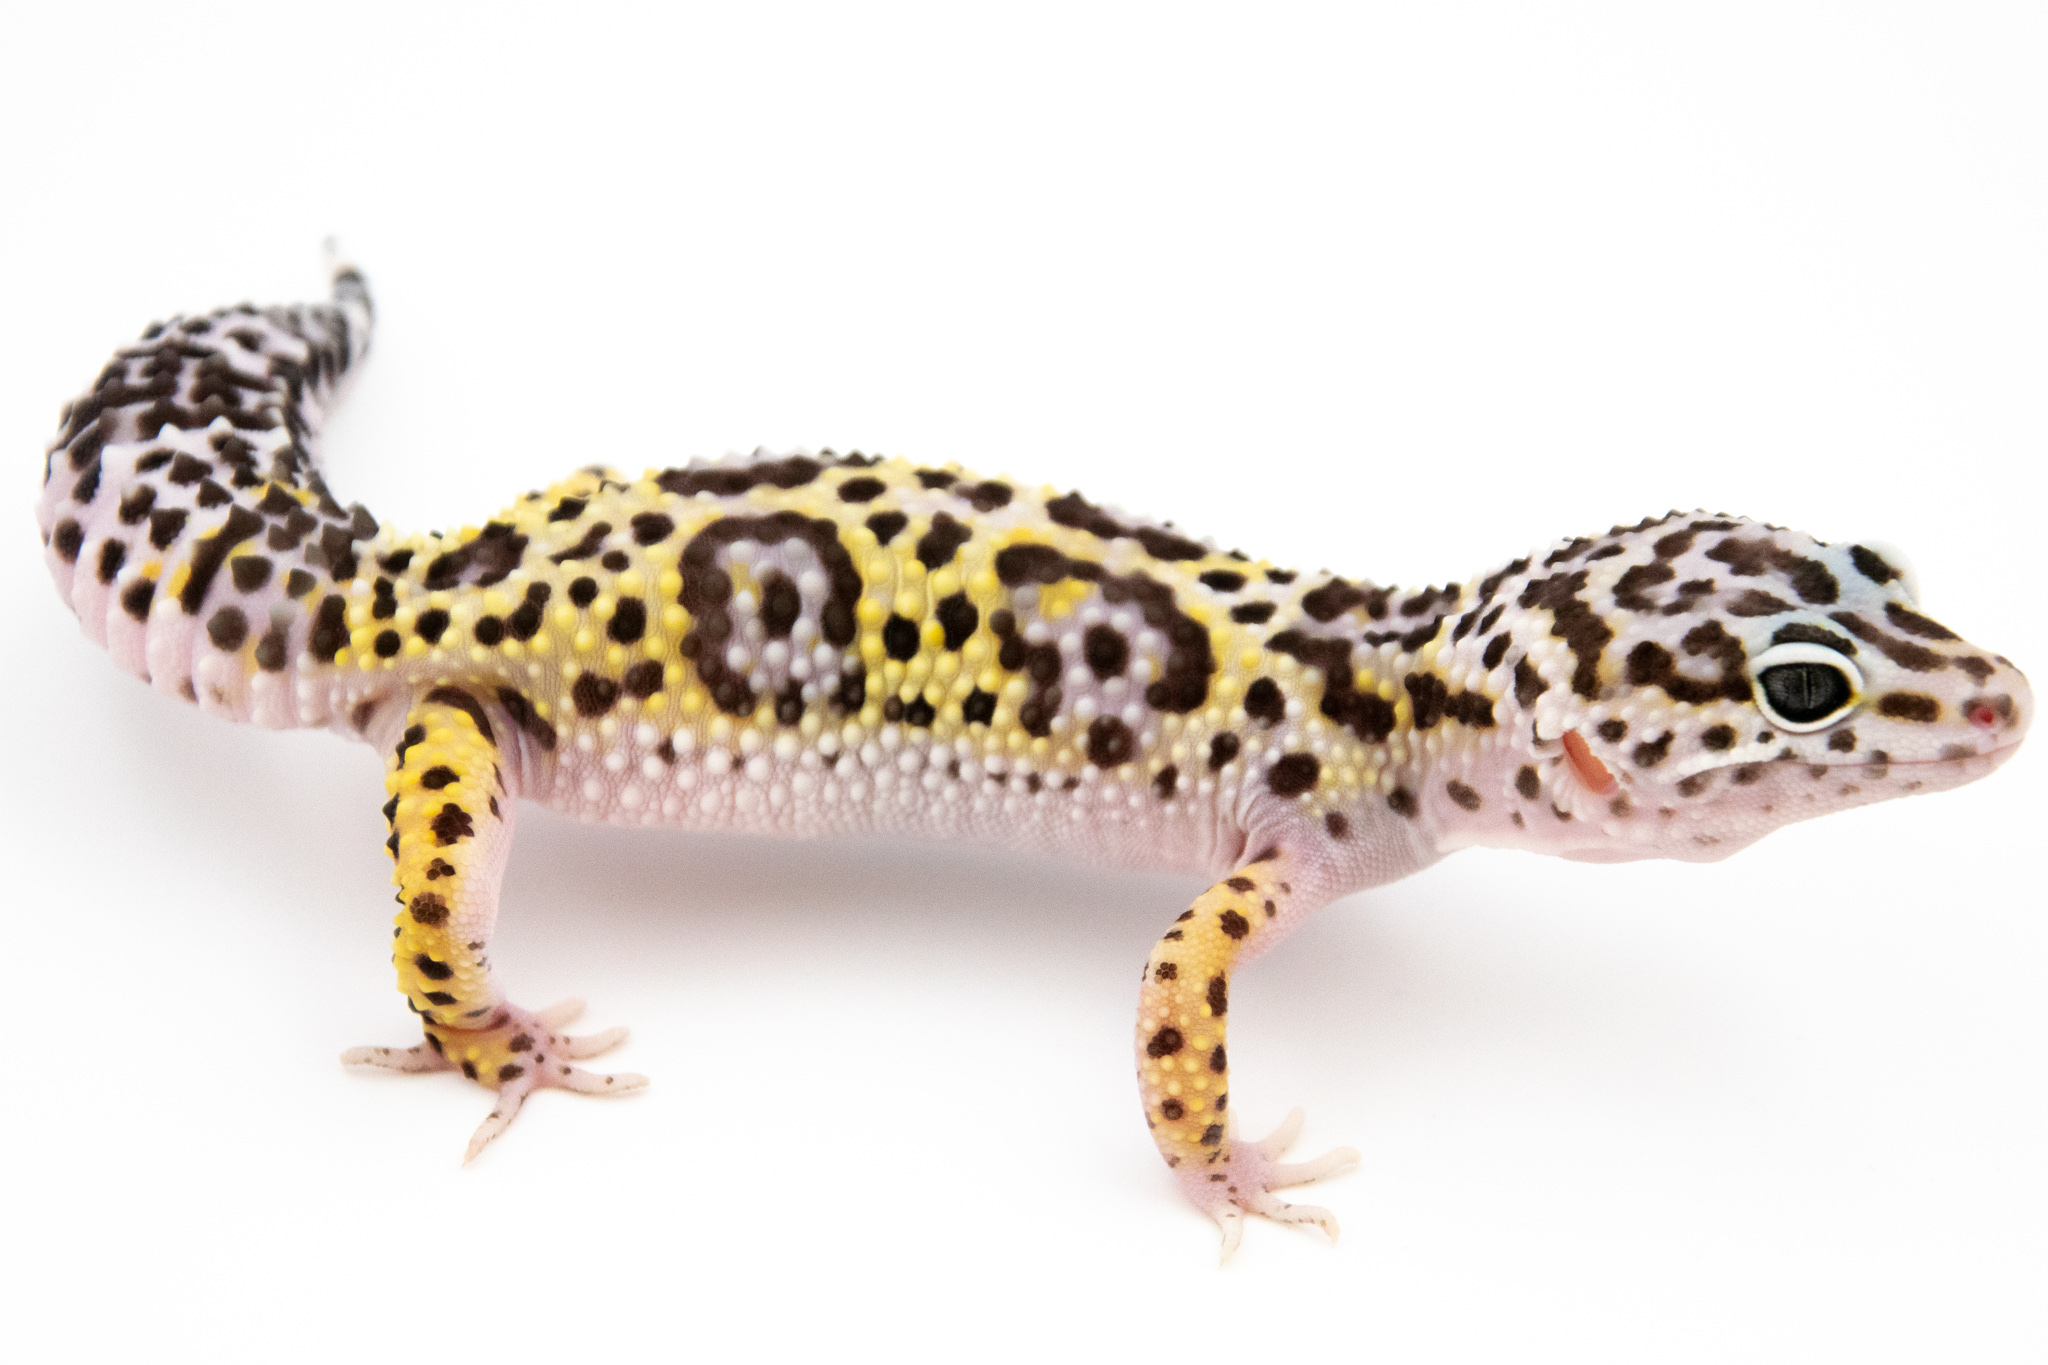 EJ62 - Gecko Léopard - Eublepharis Macularius Mack Snow - non sexé - NC 2021